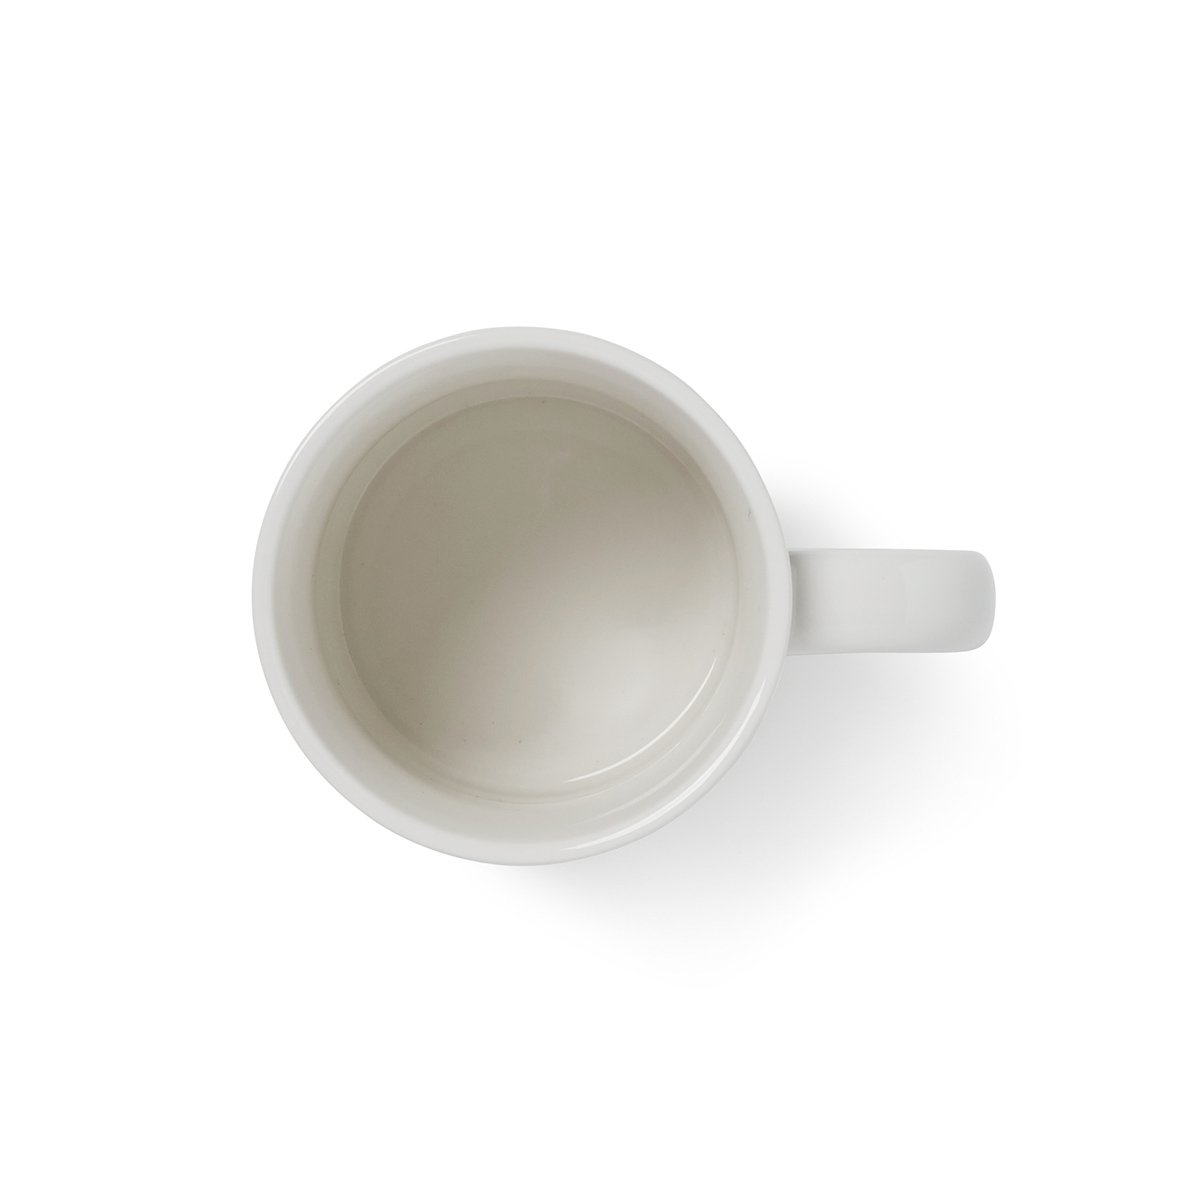 BROWN Helvetica Ceramic Coffee Drip Set